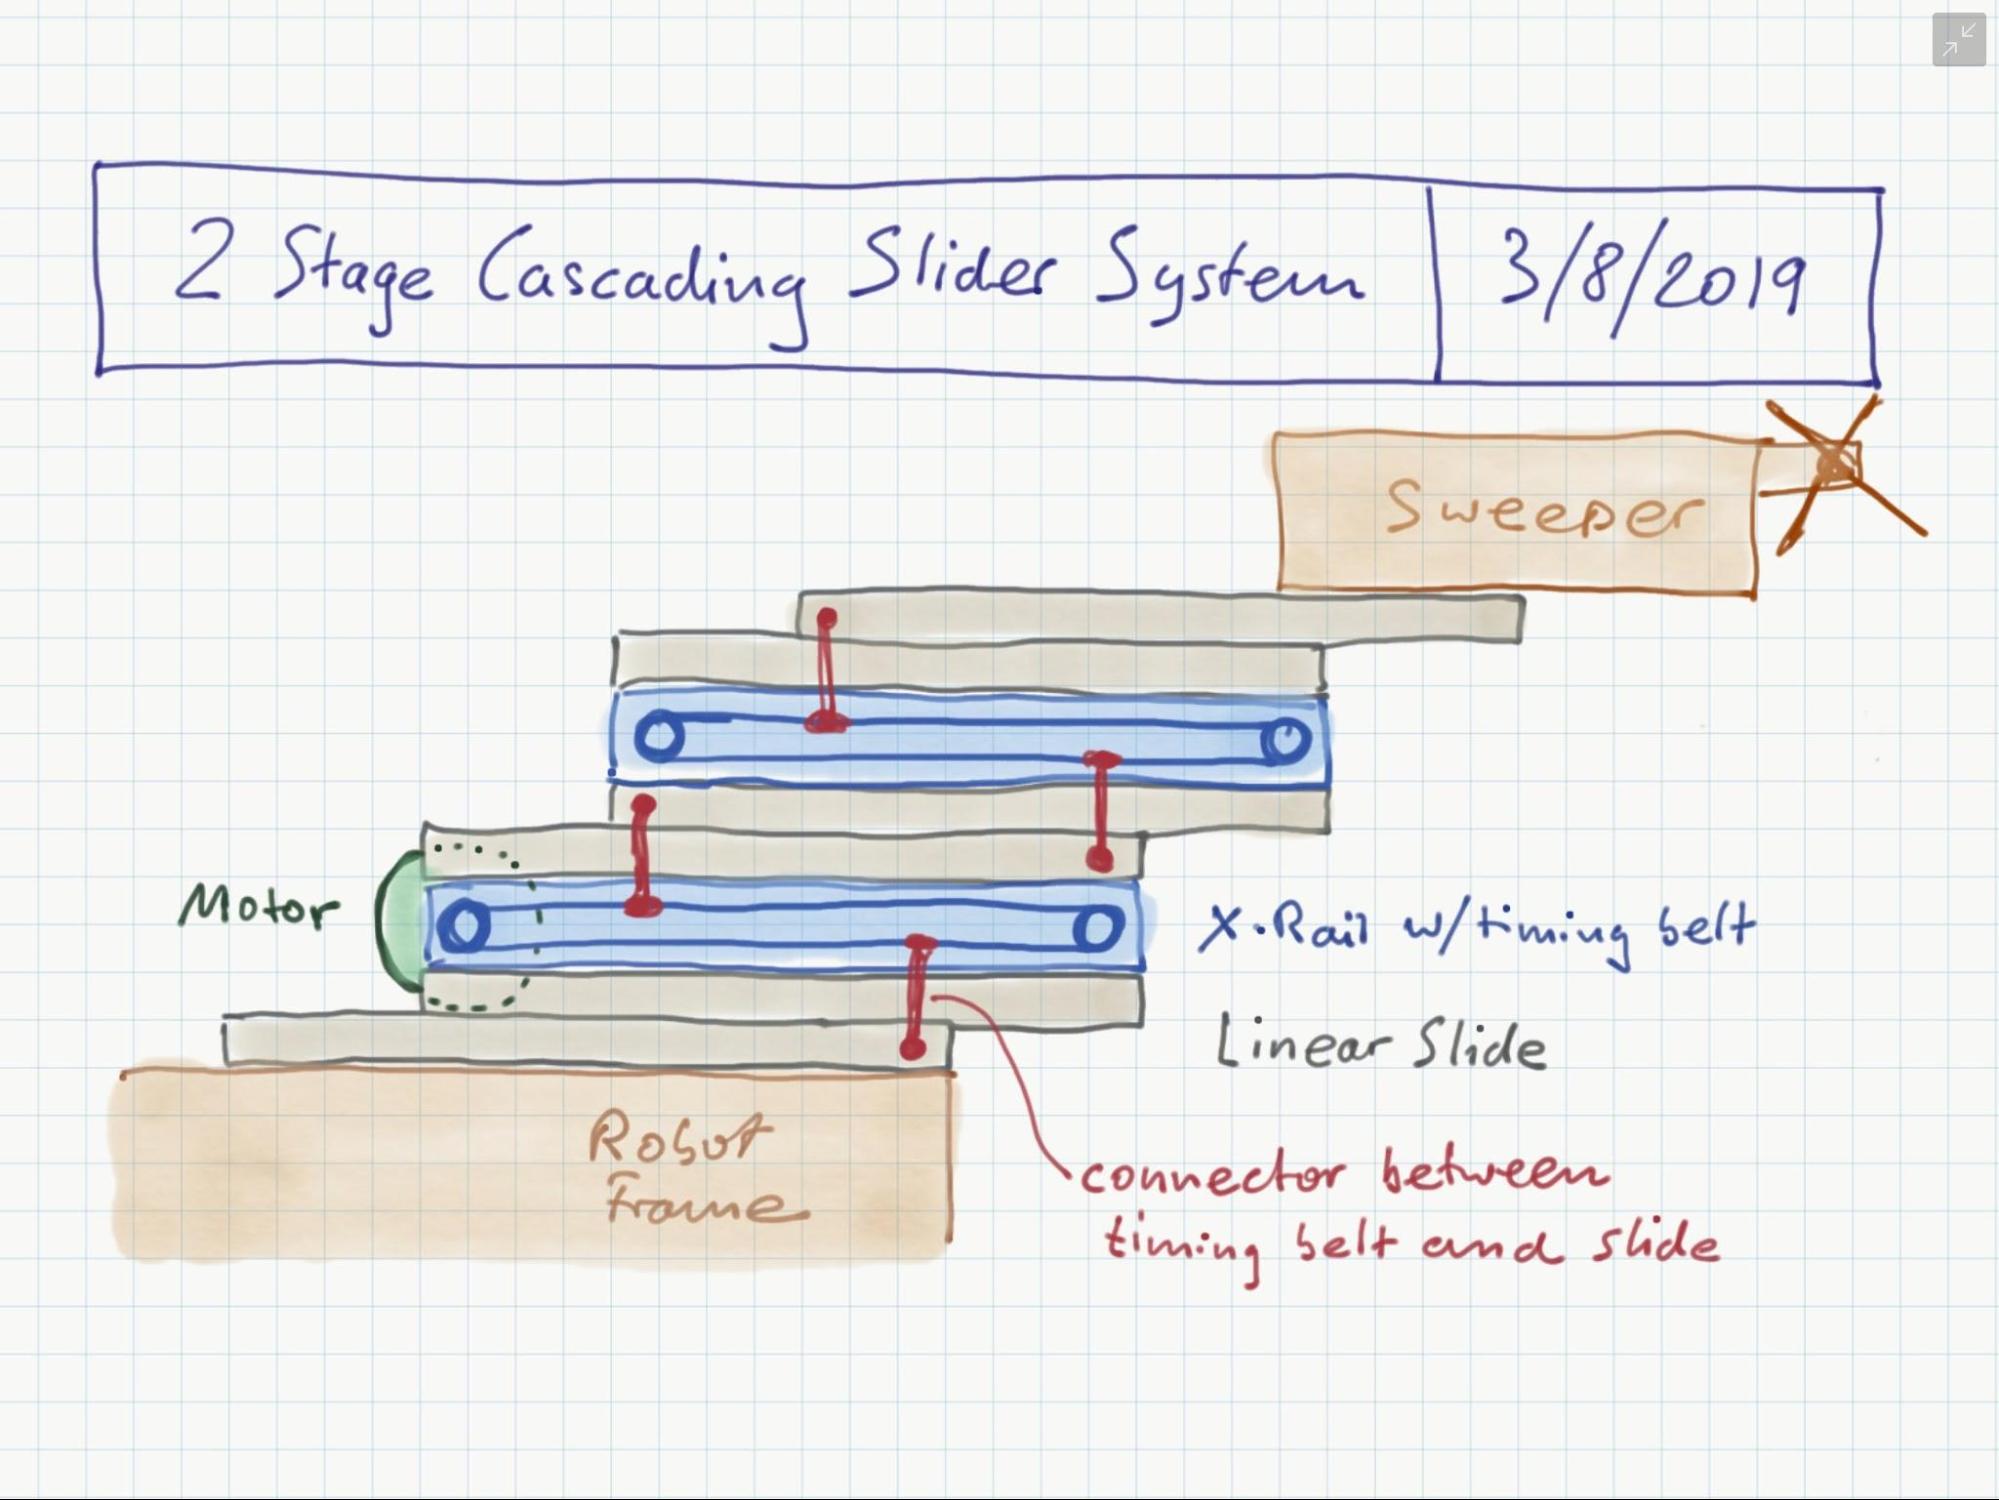 5064's cascading belt rigging diagram